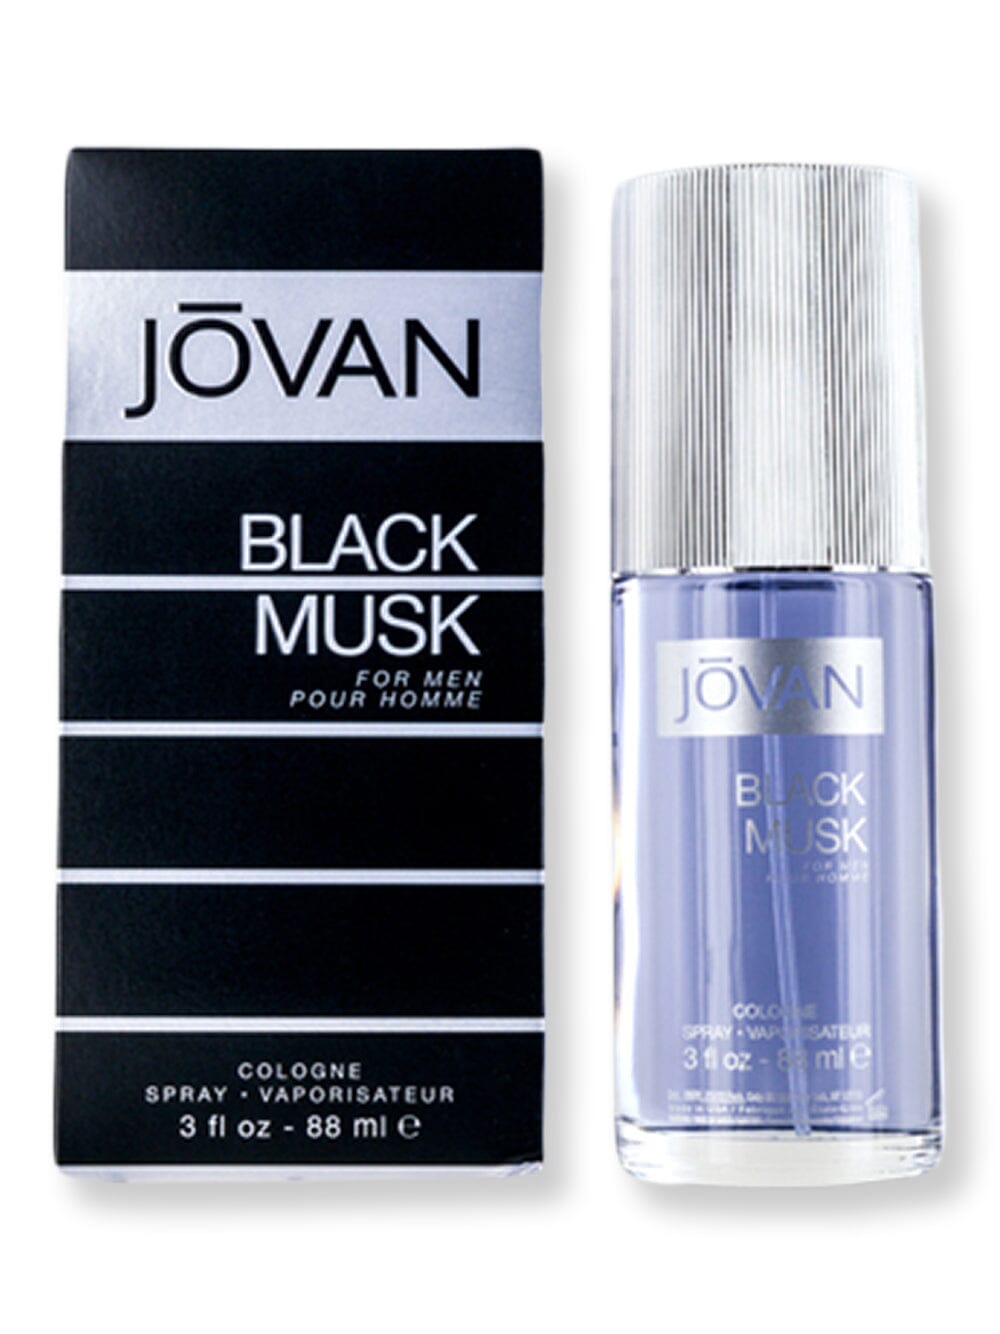 Jovan Jovan Black Musk Cologne Spray 3 oz88 ml Cologne 